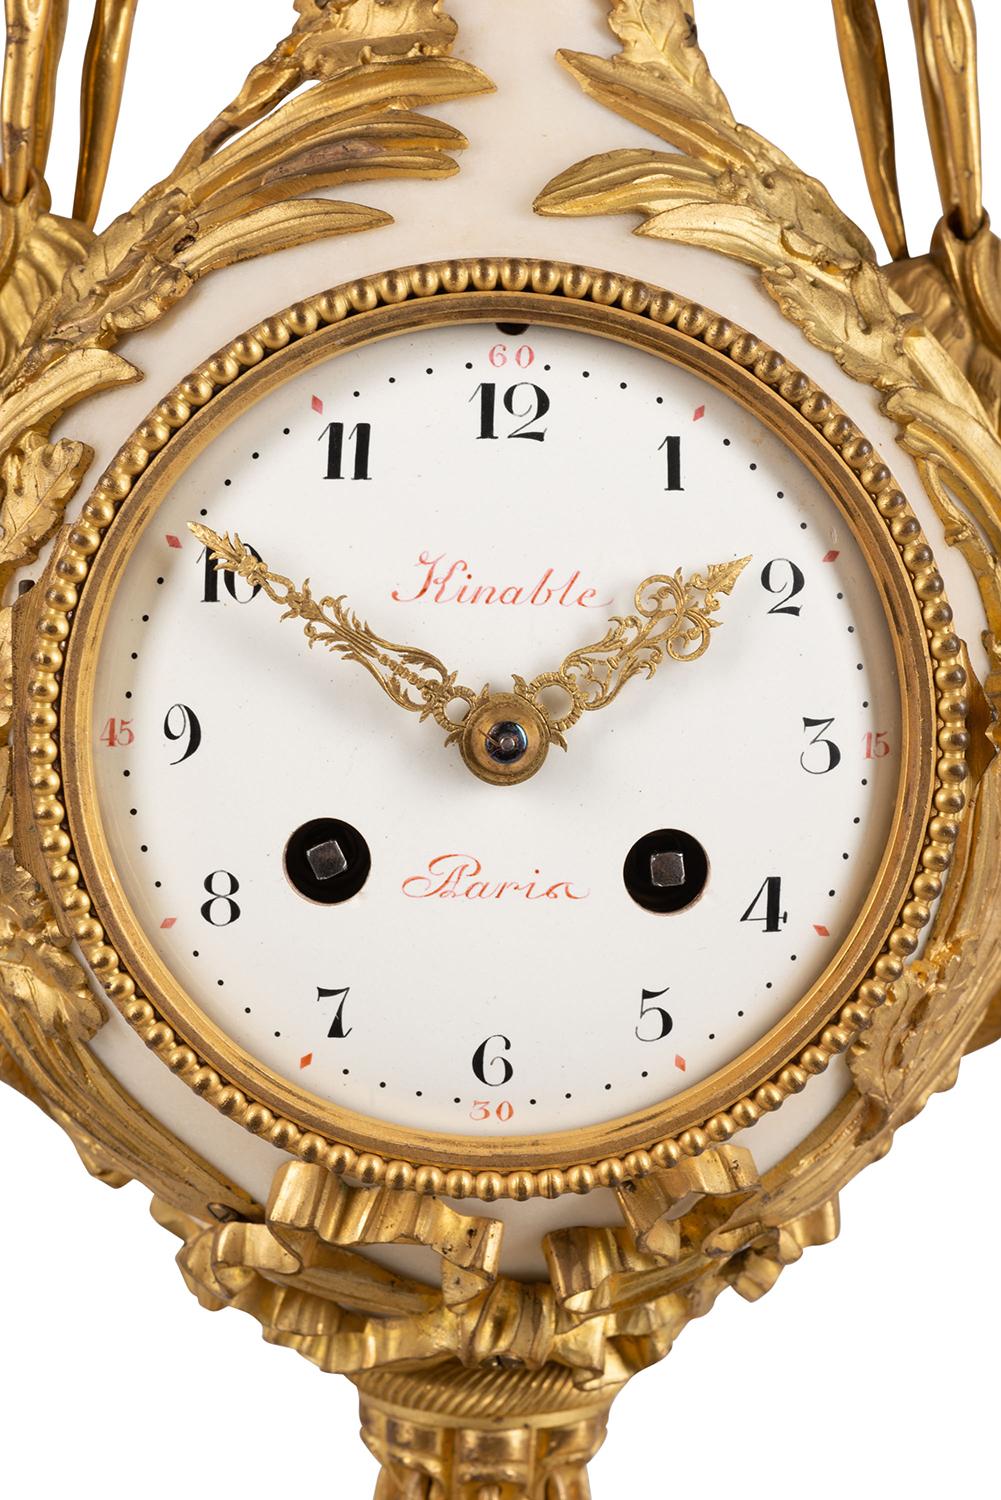 beliard clock value